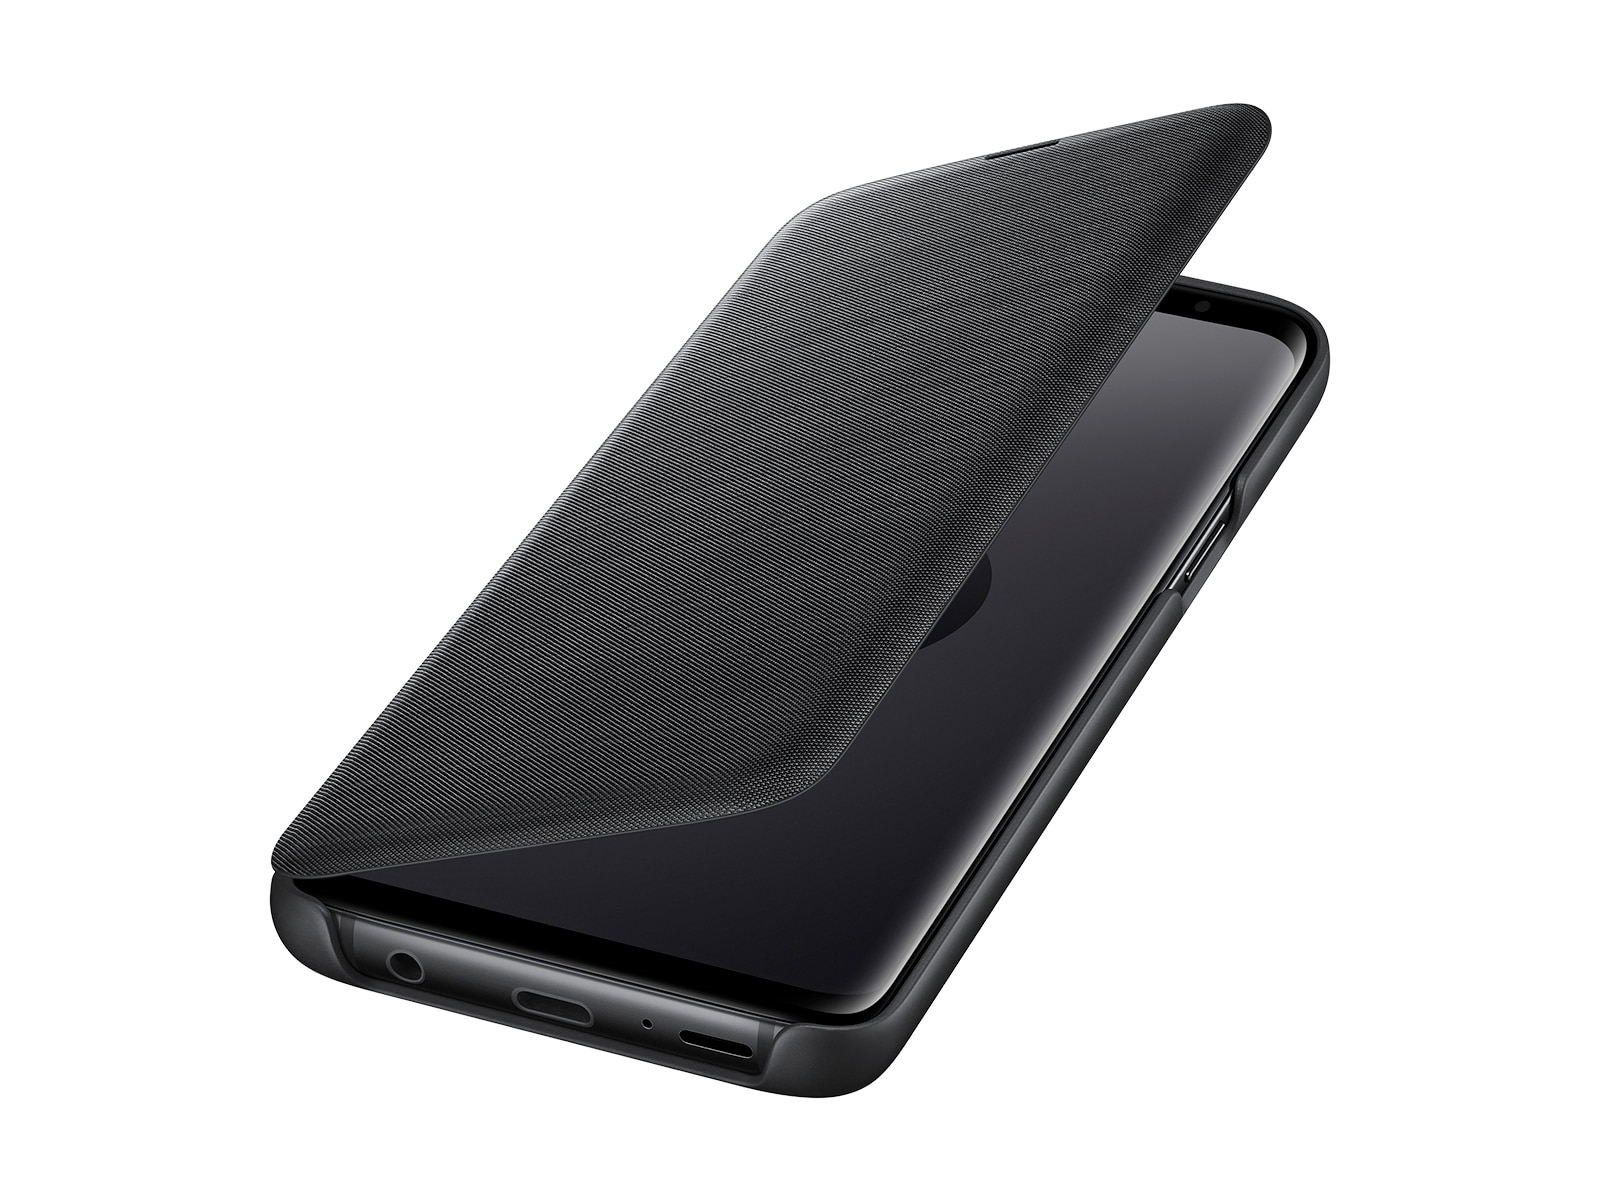 Normalisatie zonlicht aantrekken Galaxy S9 LED Wallet Cover, Black Mobile Accessories - EF-NG960PBEGUS |  Samsung US